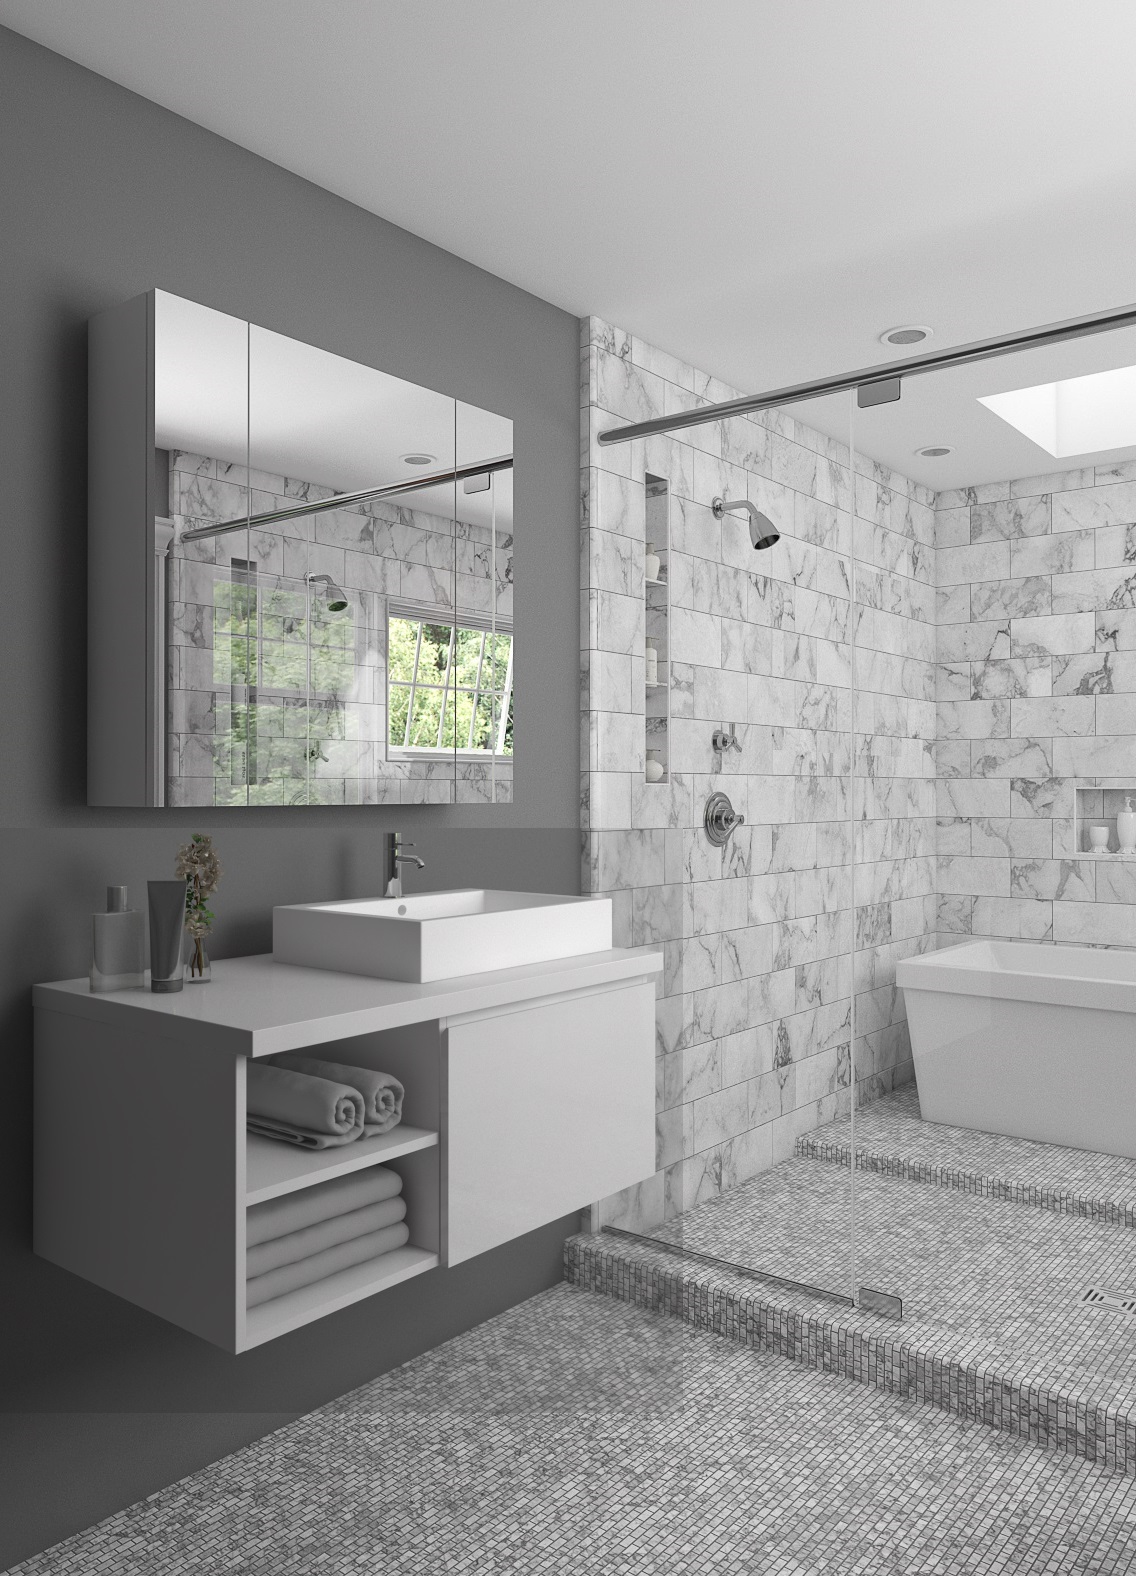 Combo tủ gương lavabo cao cấp là giải pháp tối ưu cho không gian phòng tắm của bạn. Thiết kế thông minh và đa dạng kích thước giúp bạn dễ dàng tùy chỉnh và sắp xếp theo ý muốn. Chất lượng cao cấp cùng với tính năng tiện ích sẽ nổi bật trong phong cách và nâng cao trải nghiệm tắm rửa của bạn.